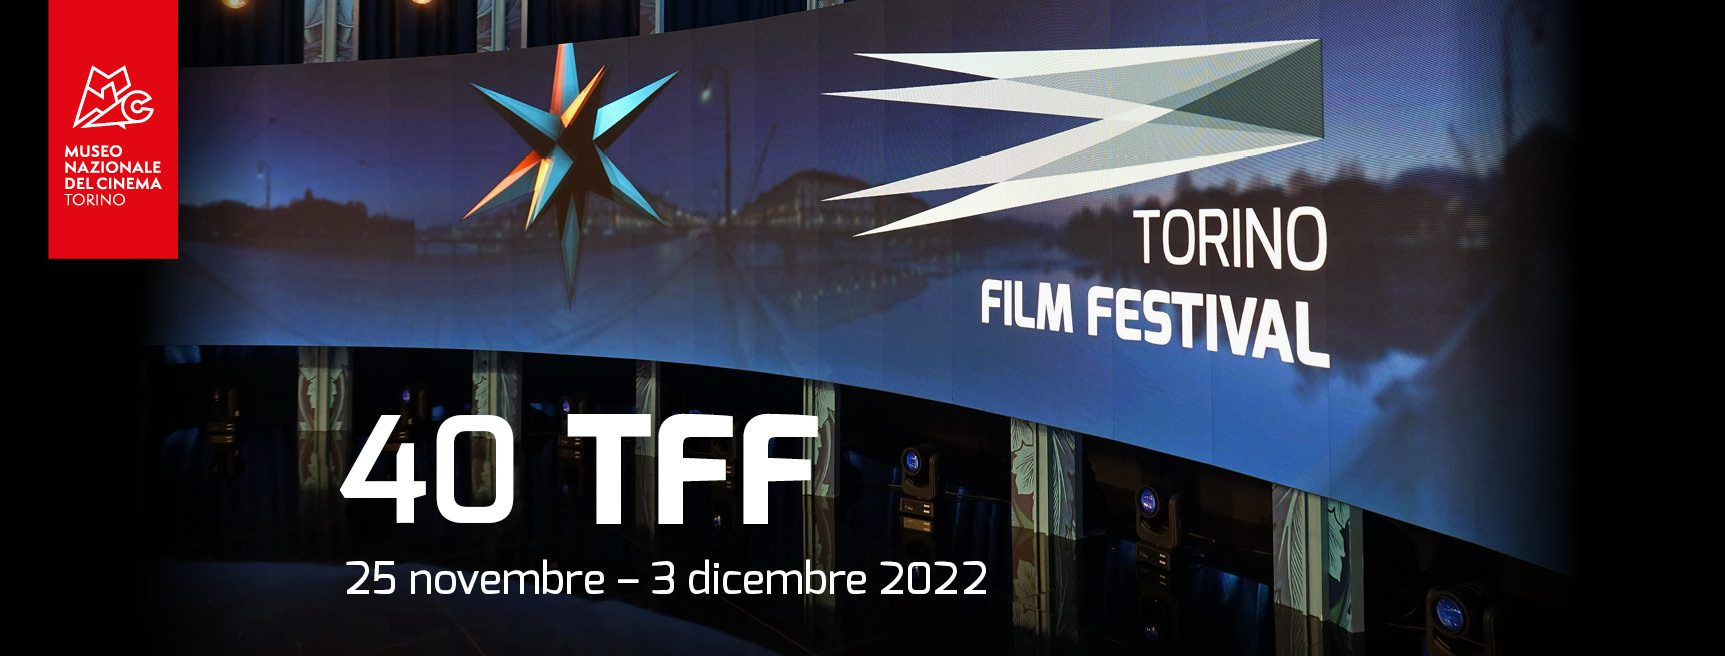 TORINO FILM FESTIVAL DAL 25 NOVEMBRE AL 03 DICEMBRE 2022